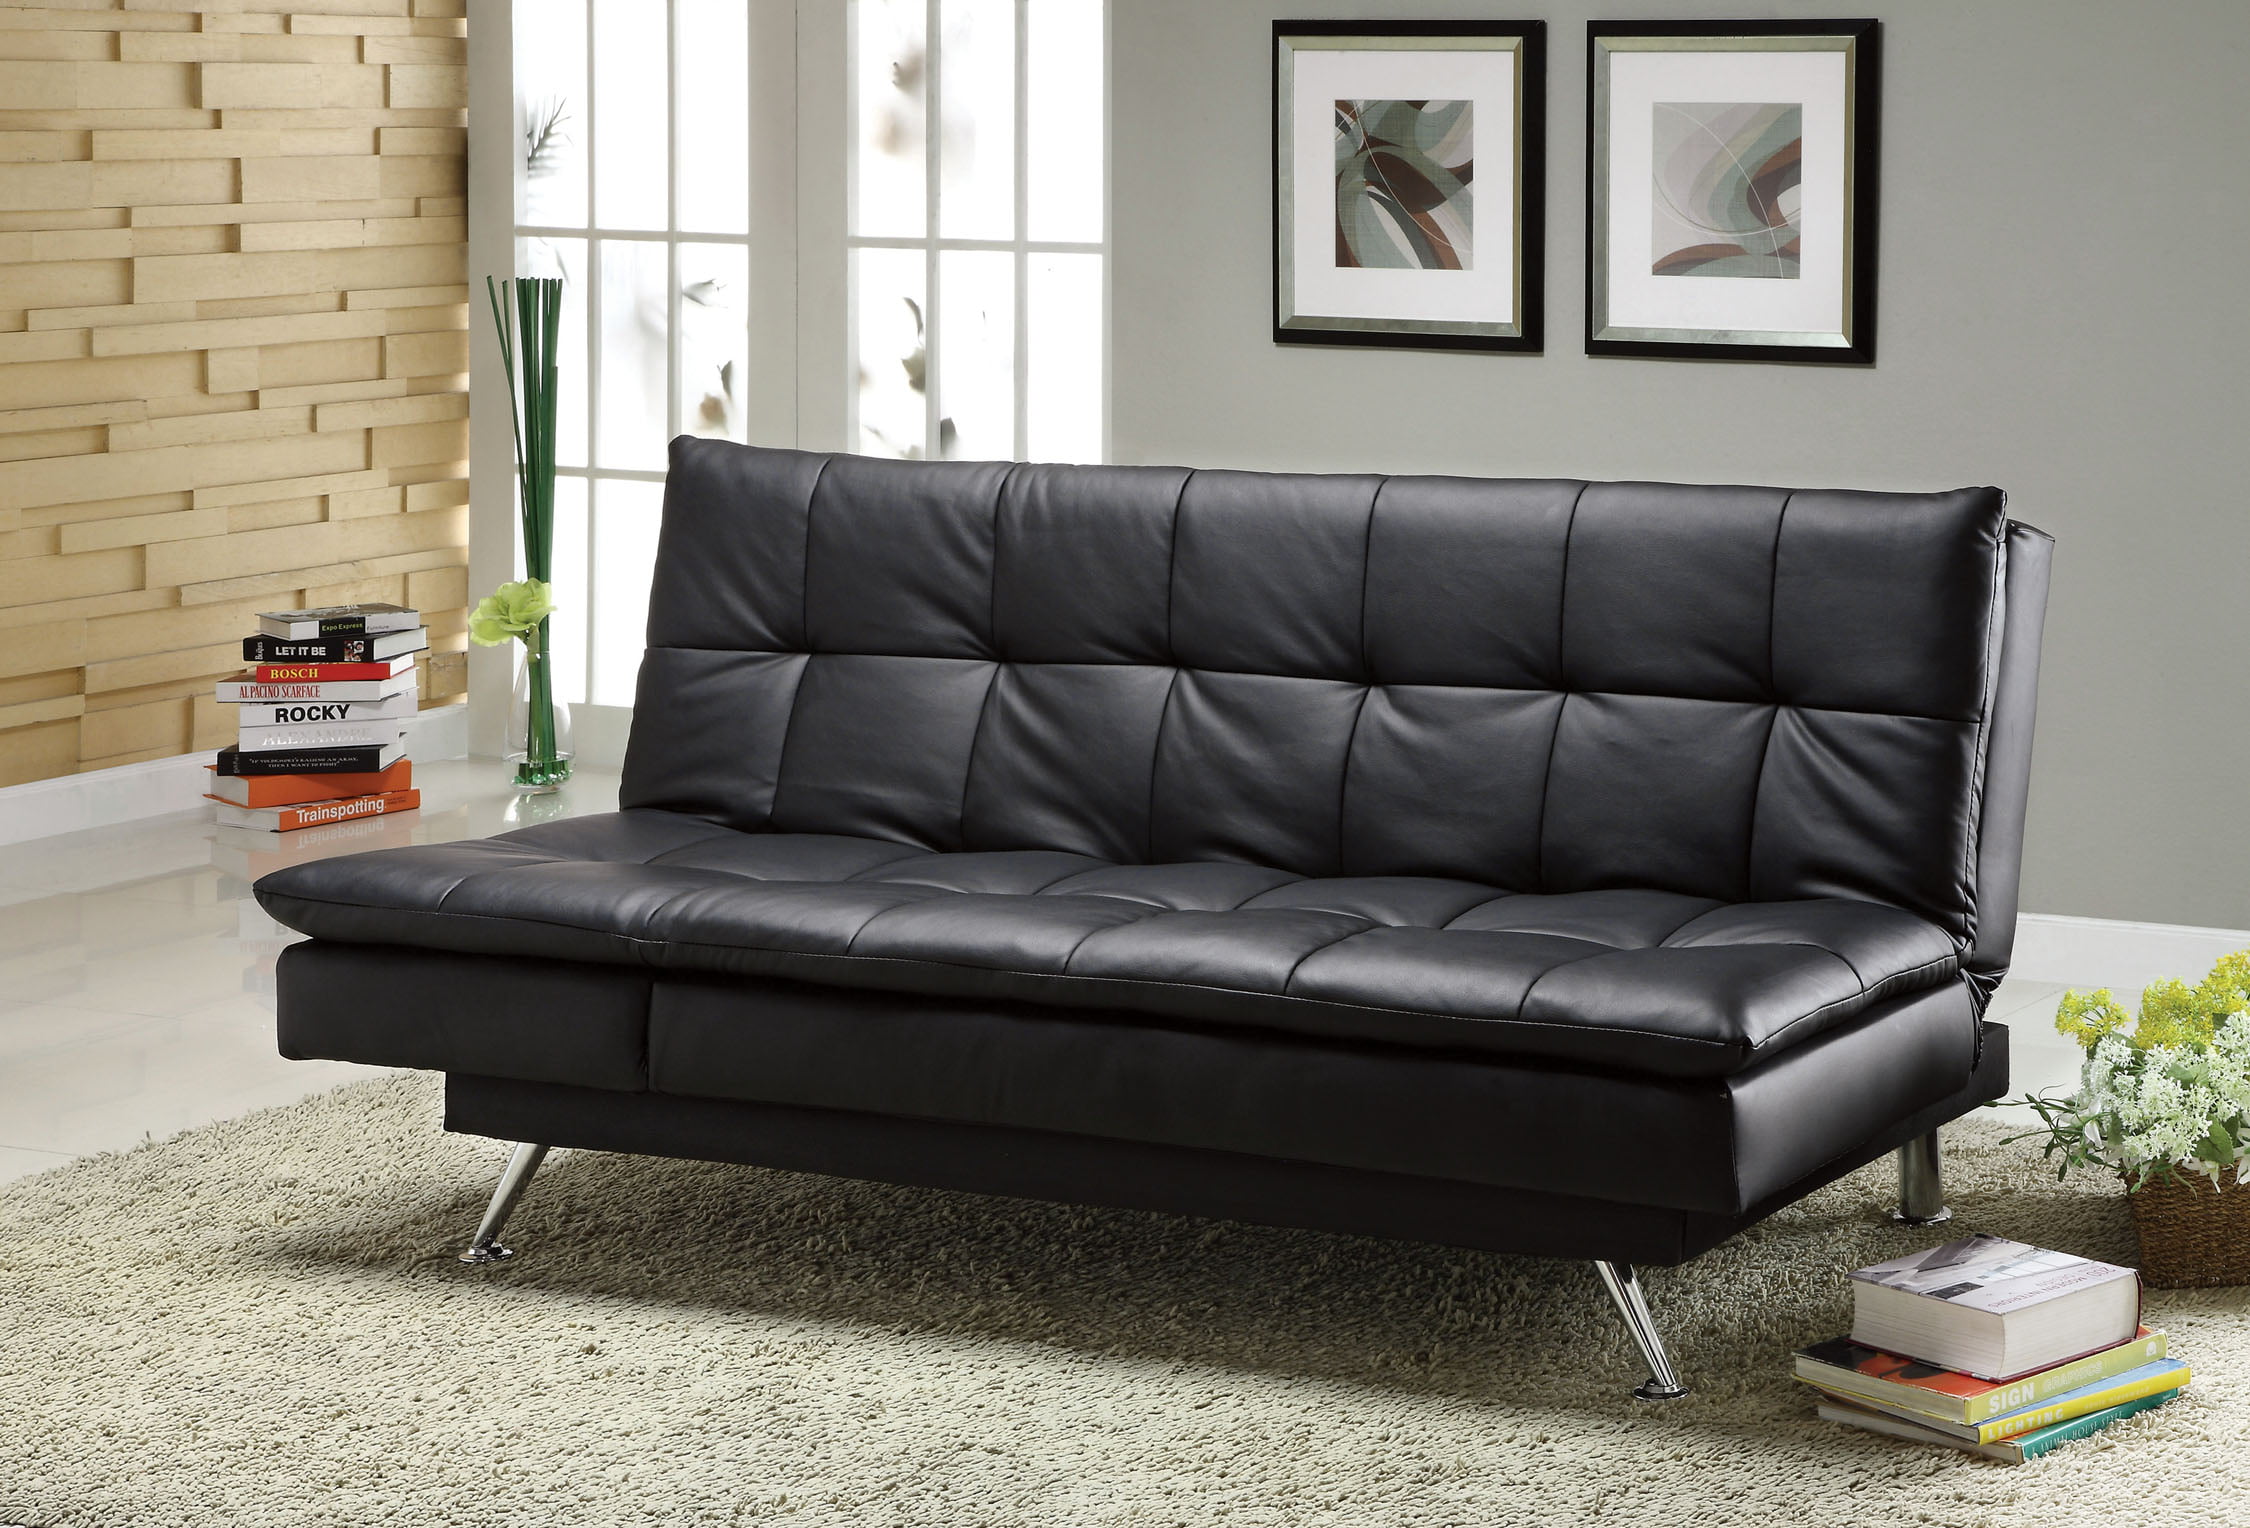 antique leather futon sofa